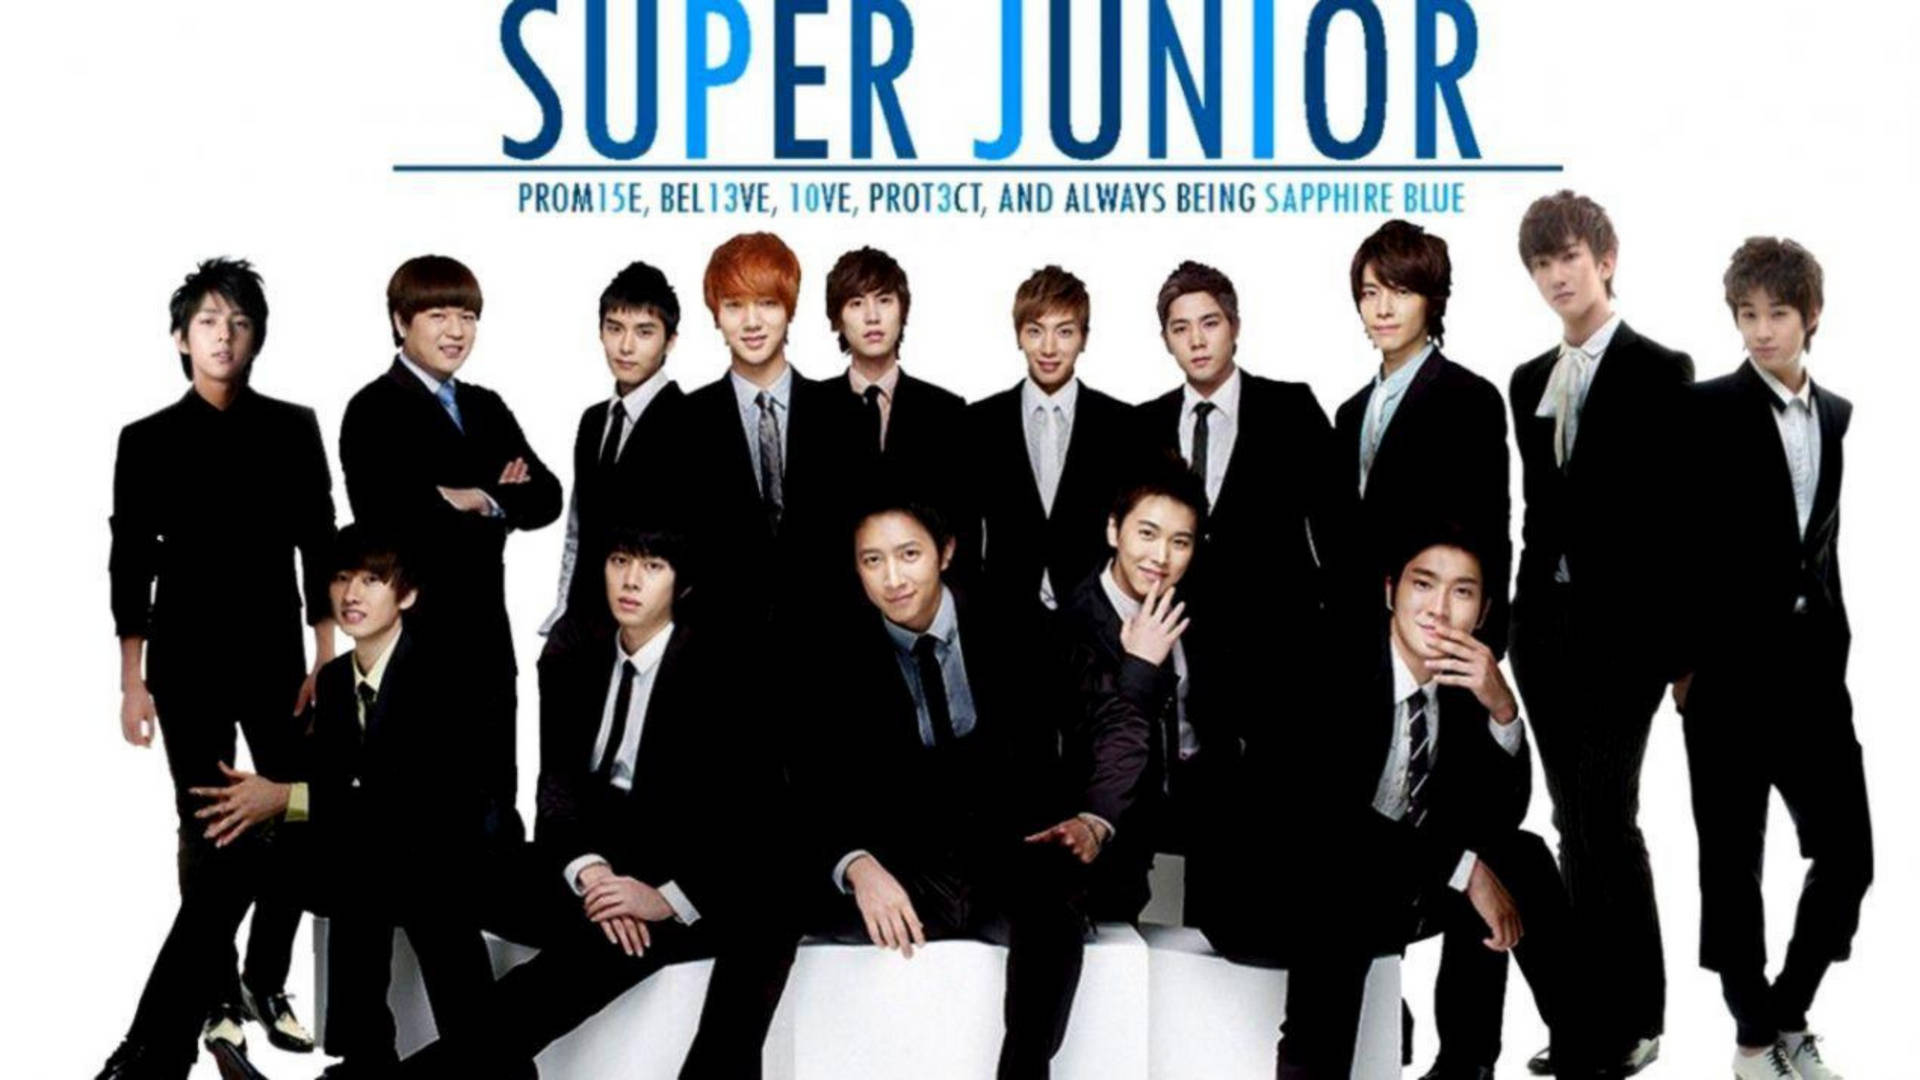 Superjunior Sapphire Blue Skulle Översättas Till Super Junior Safirblått Som Är En Populär Färg För Dator- Och Mobilbakgrundsbilder. Wallpaper